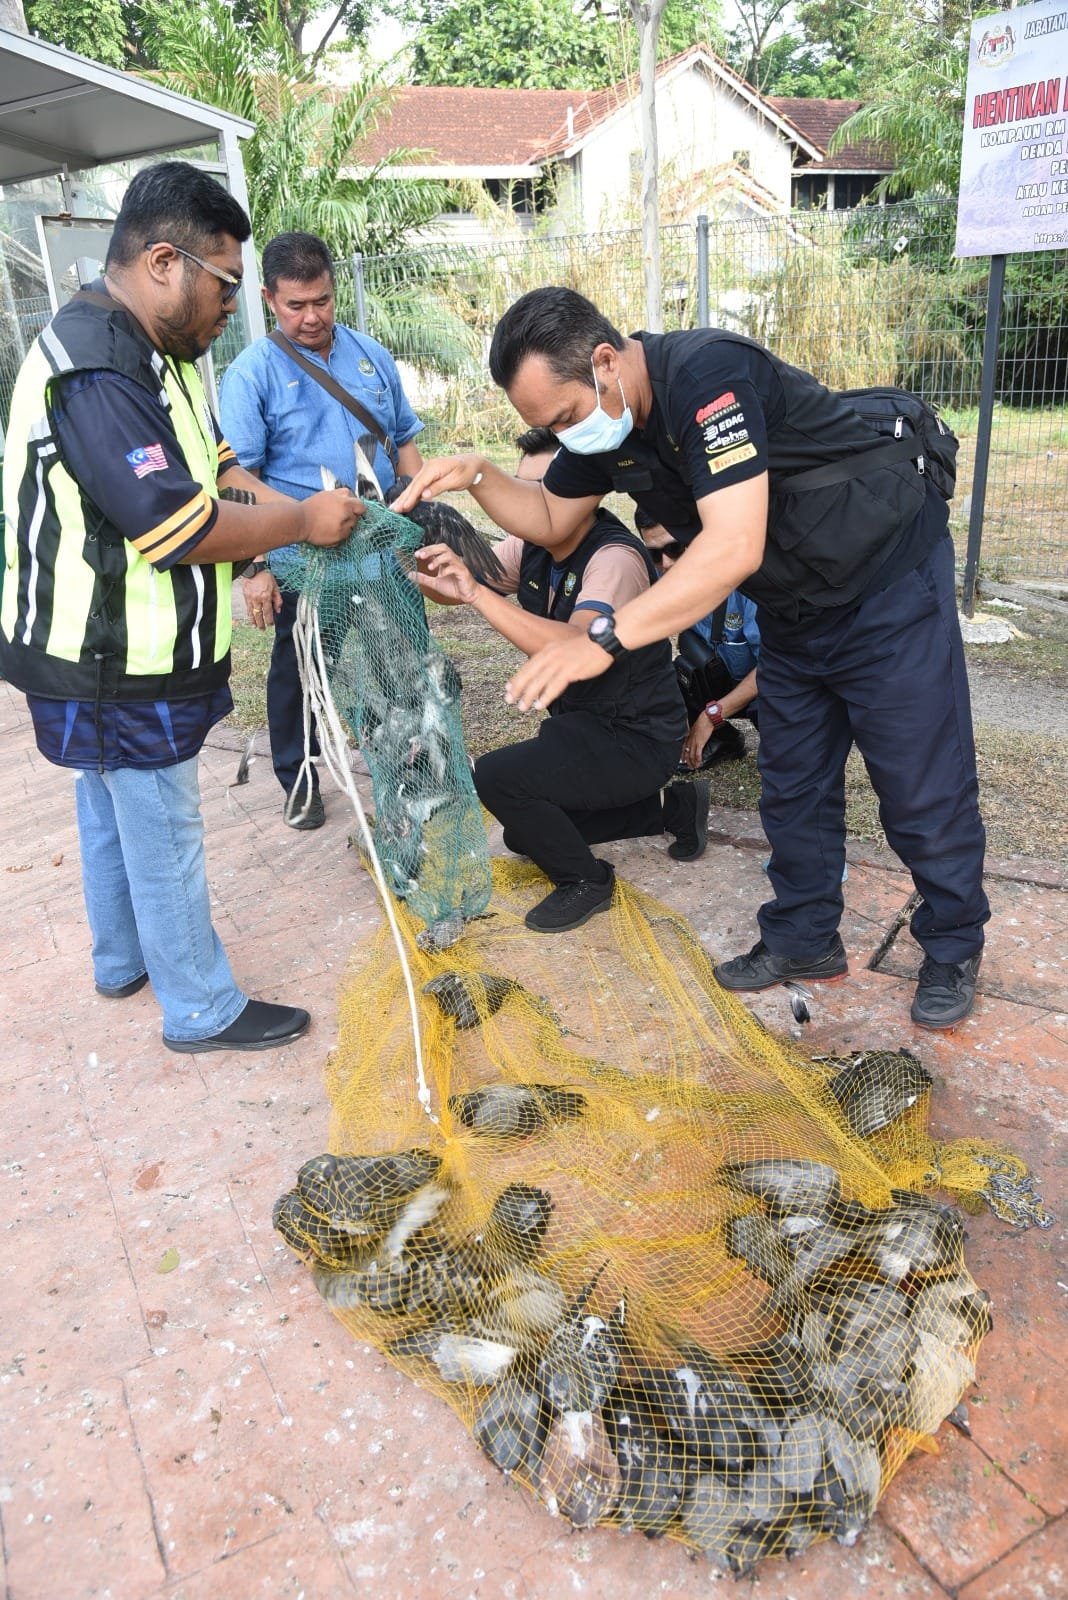 槟岛市政厅人员积极捕捉鸽子。